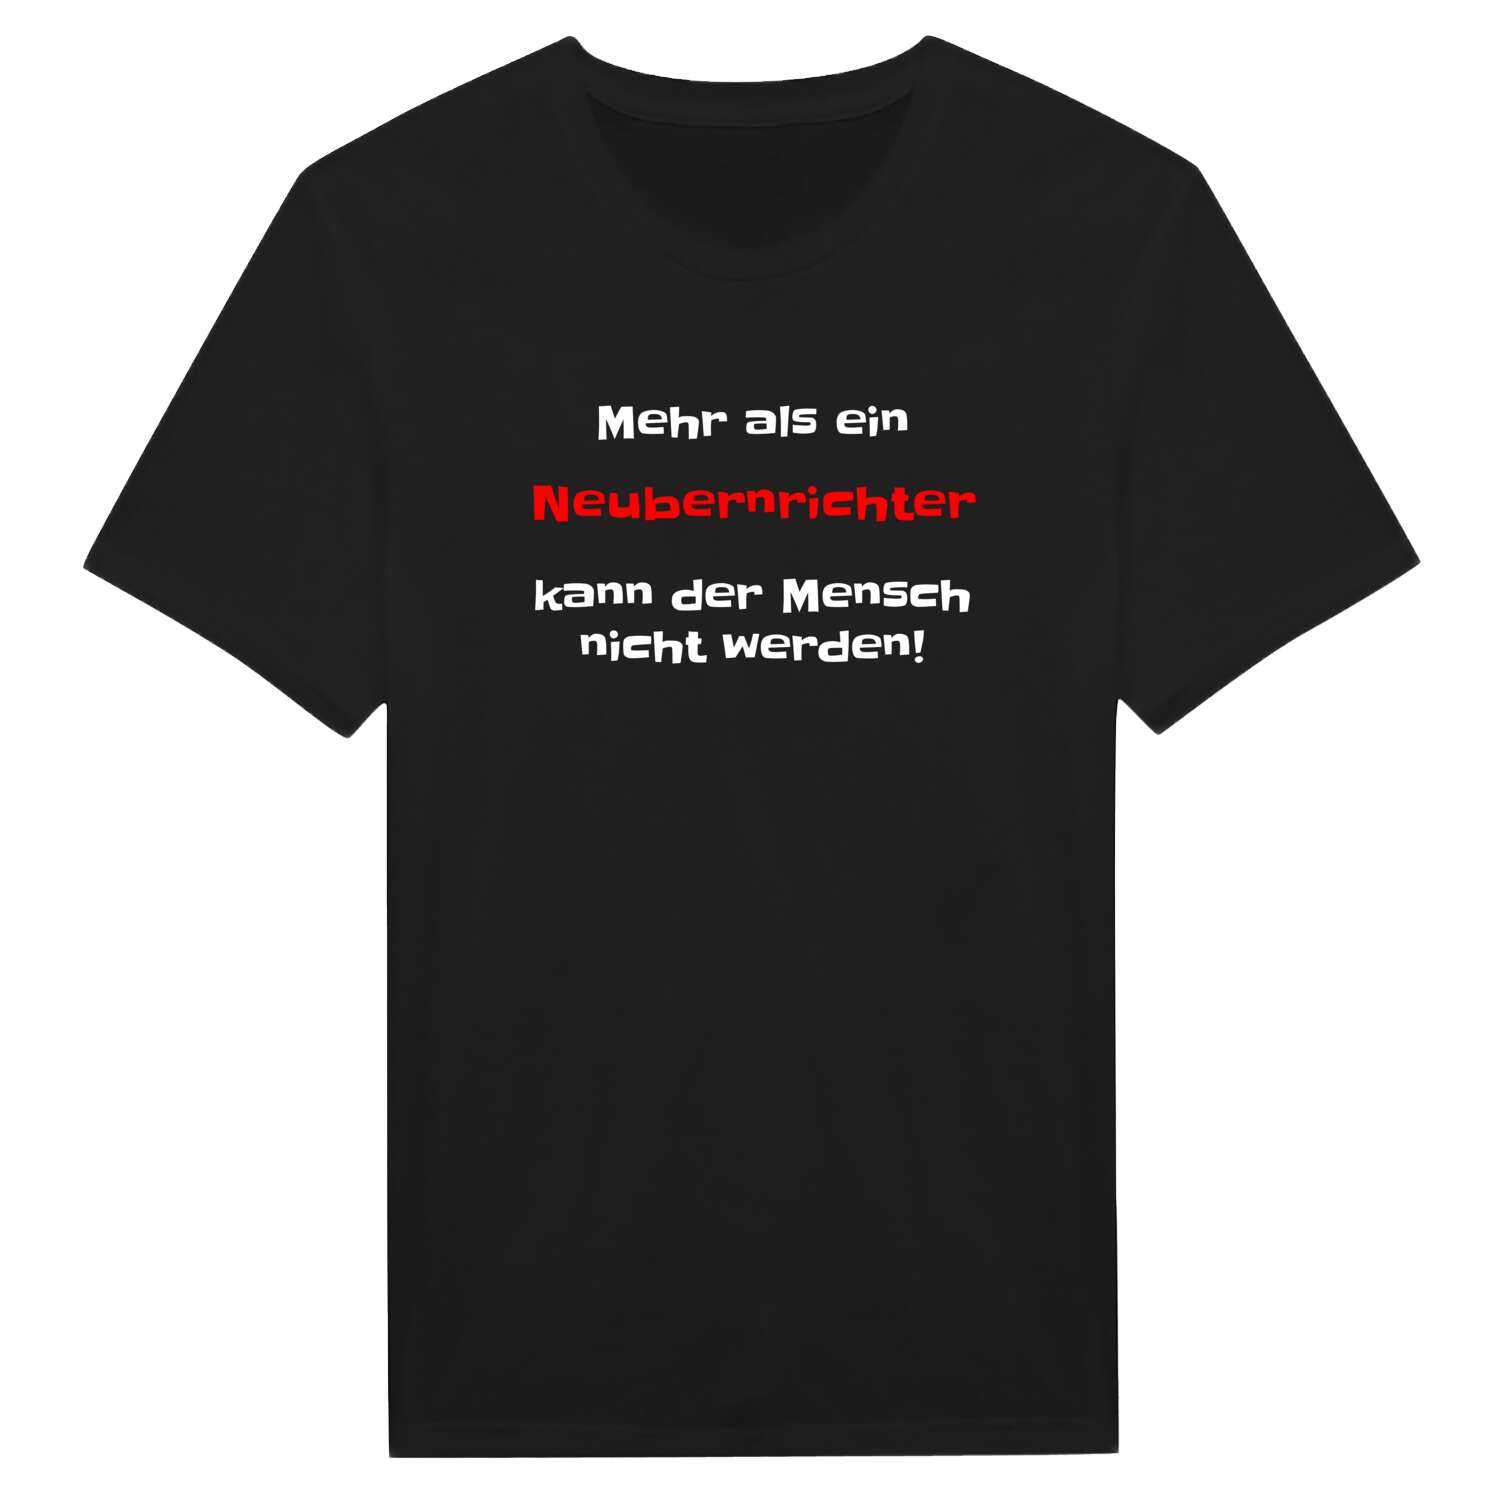 Neubernricht T-Shirt »Mehr als ein«